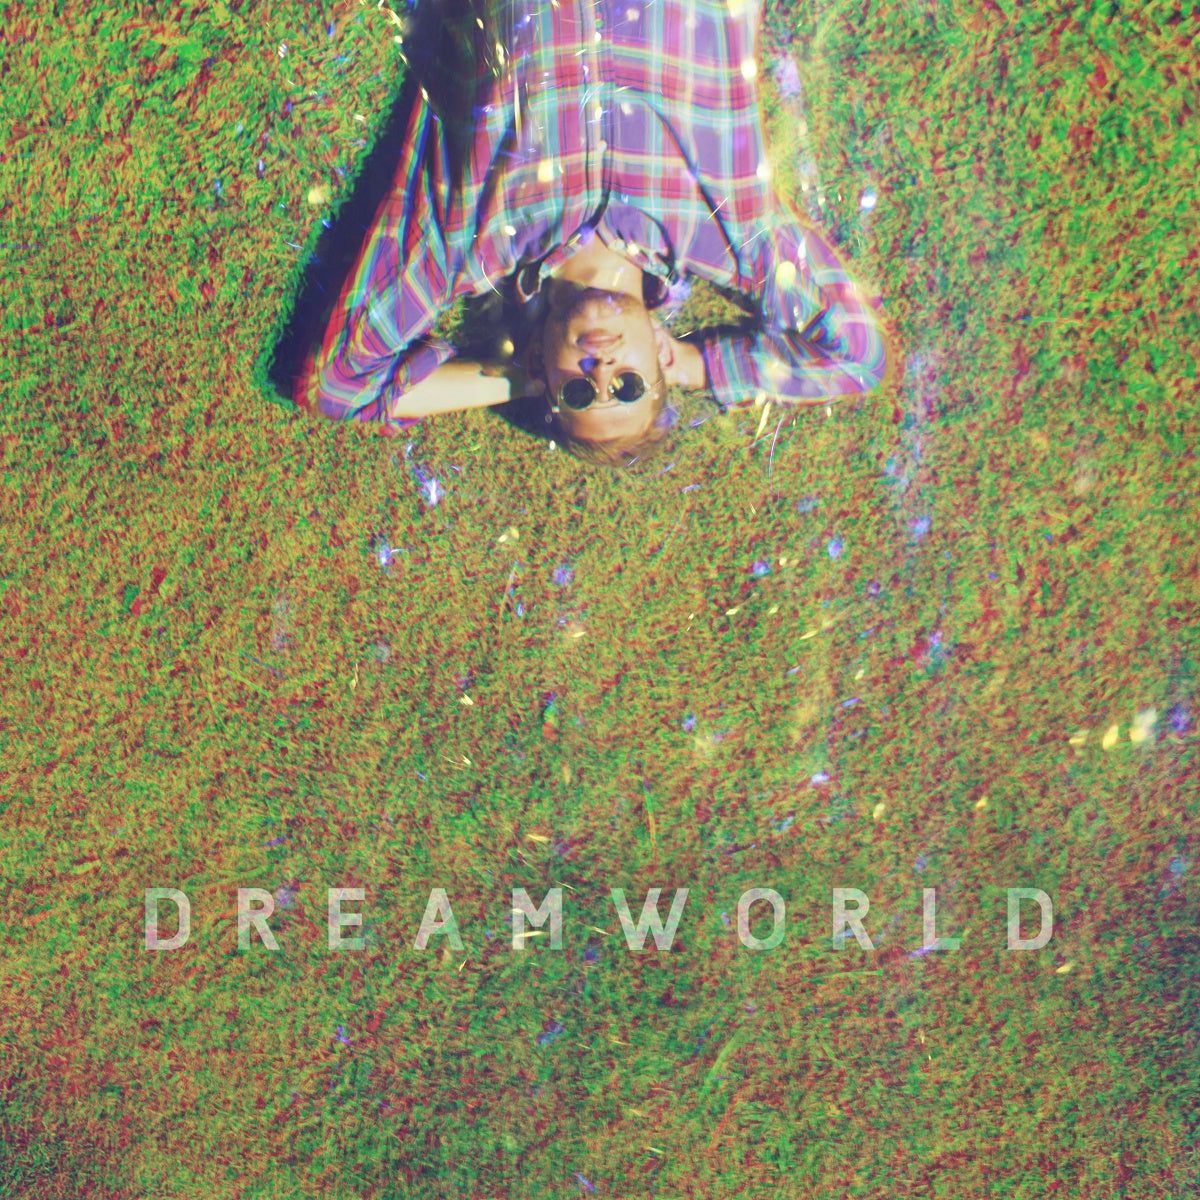 Andy Martin - 'Dreamworld'